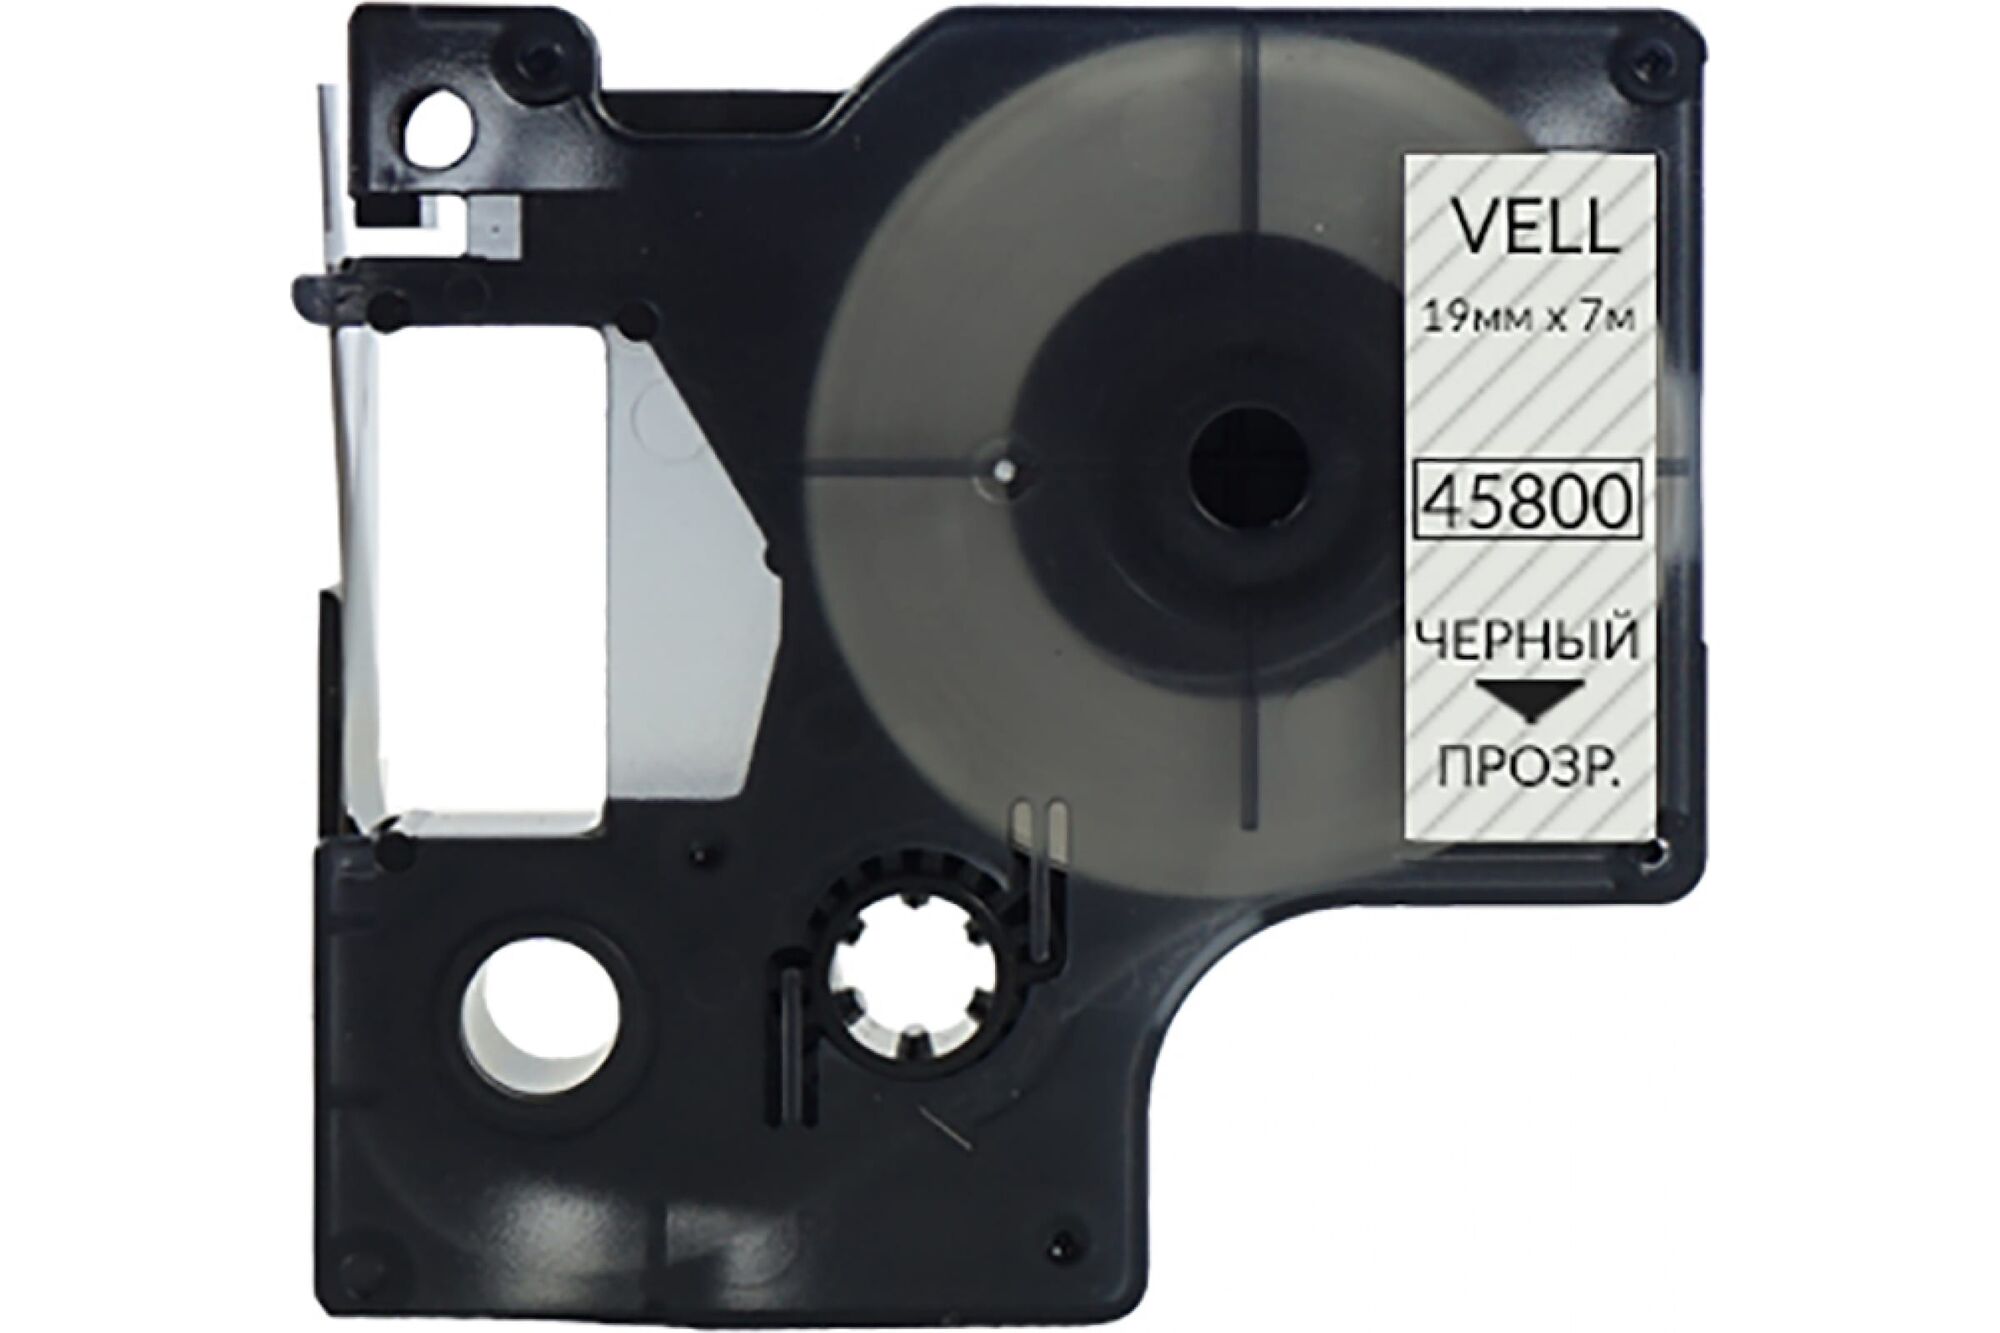 Лента Vell VL-D-S0720820/45800 19 мм, черный на прозрачном, для 420P/500TS/Rhino 5200/6000 328673